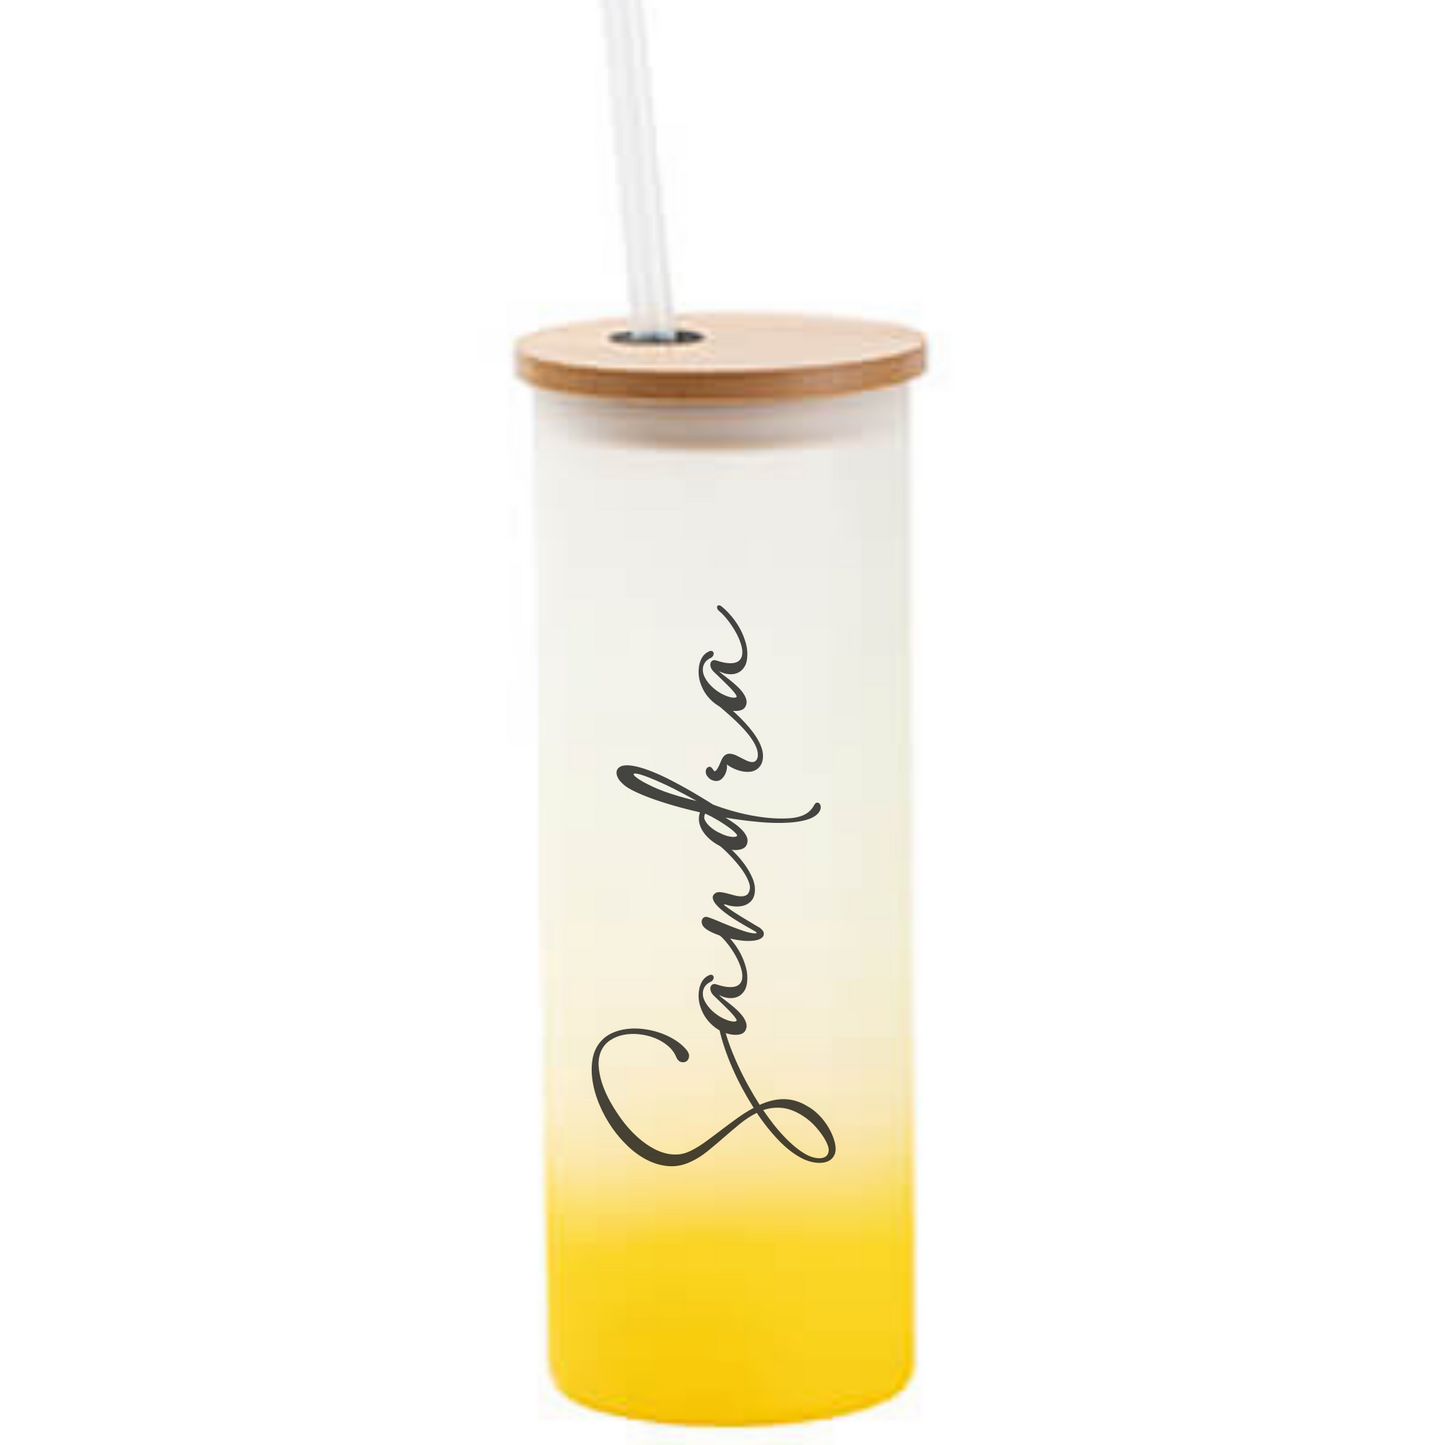 Trinkglas frosted in 4 Farben personalisiert - Tumbler mit Namen - Cocktailglas mit Bambusdeckel und Strohhalm - personalisiertes Geschenk